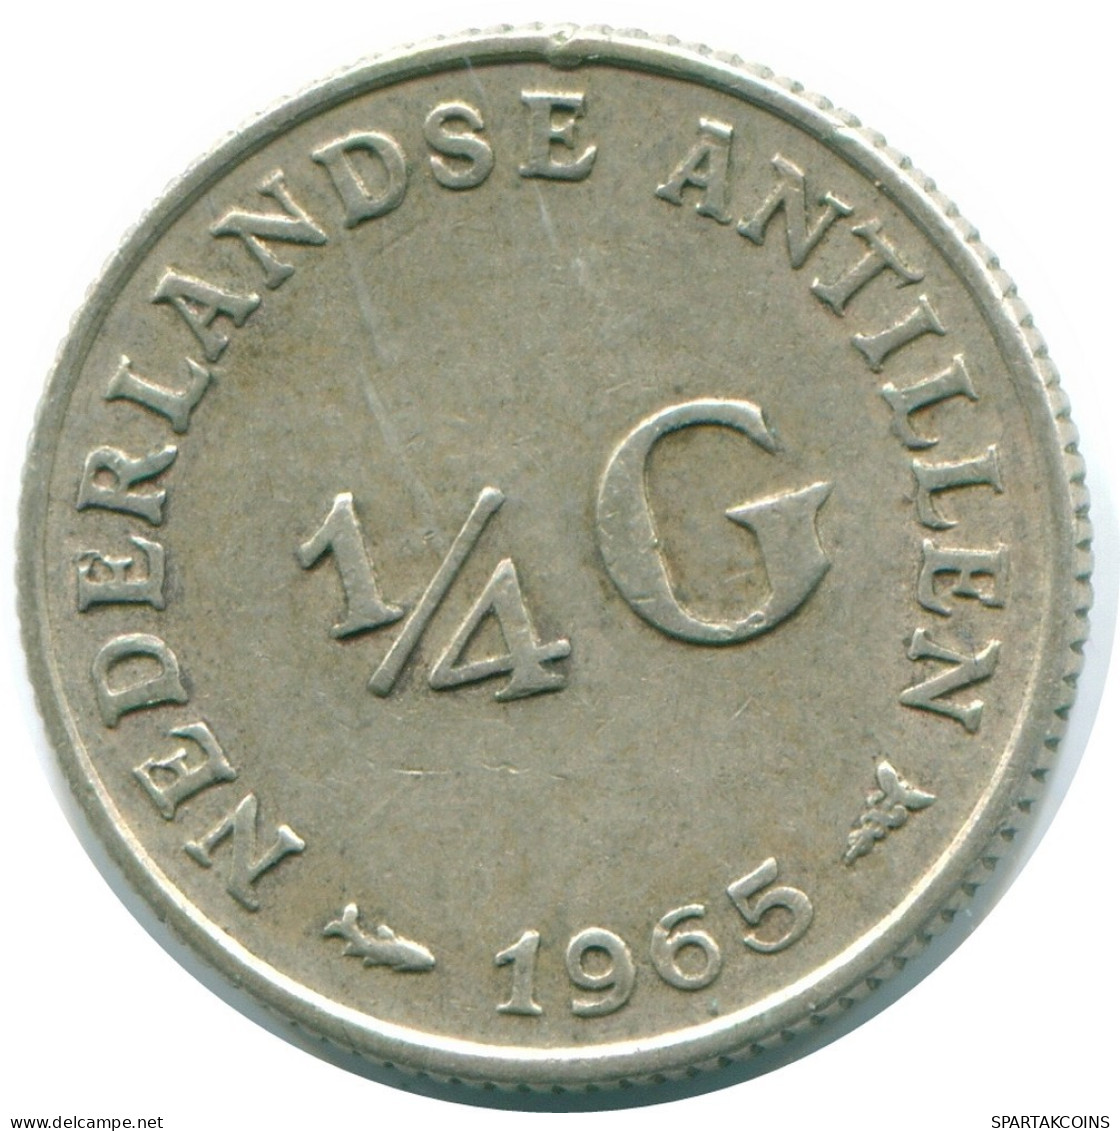 1/4 GULDEN 1965 NIEDERLÄNDISCHE ANTILLEN SILBER Koloniale Münze #NL11281.4.D.A - Antilles Néerlandaises